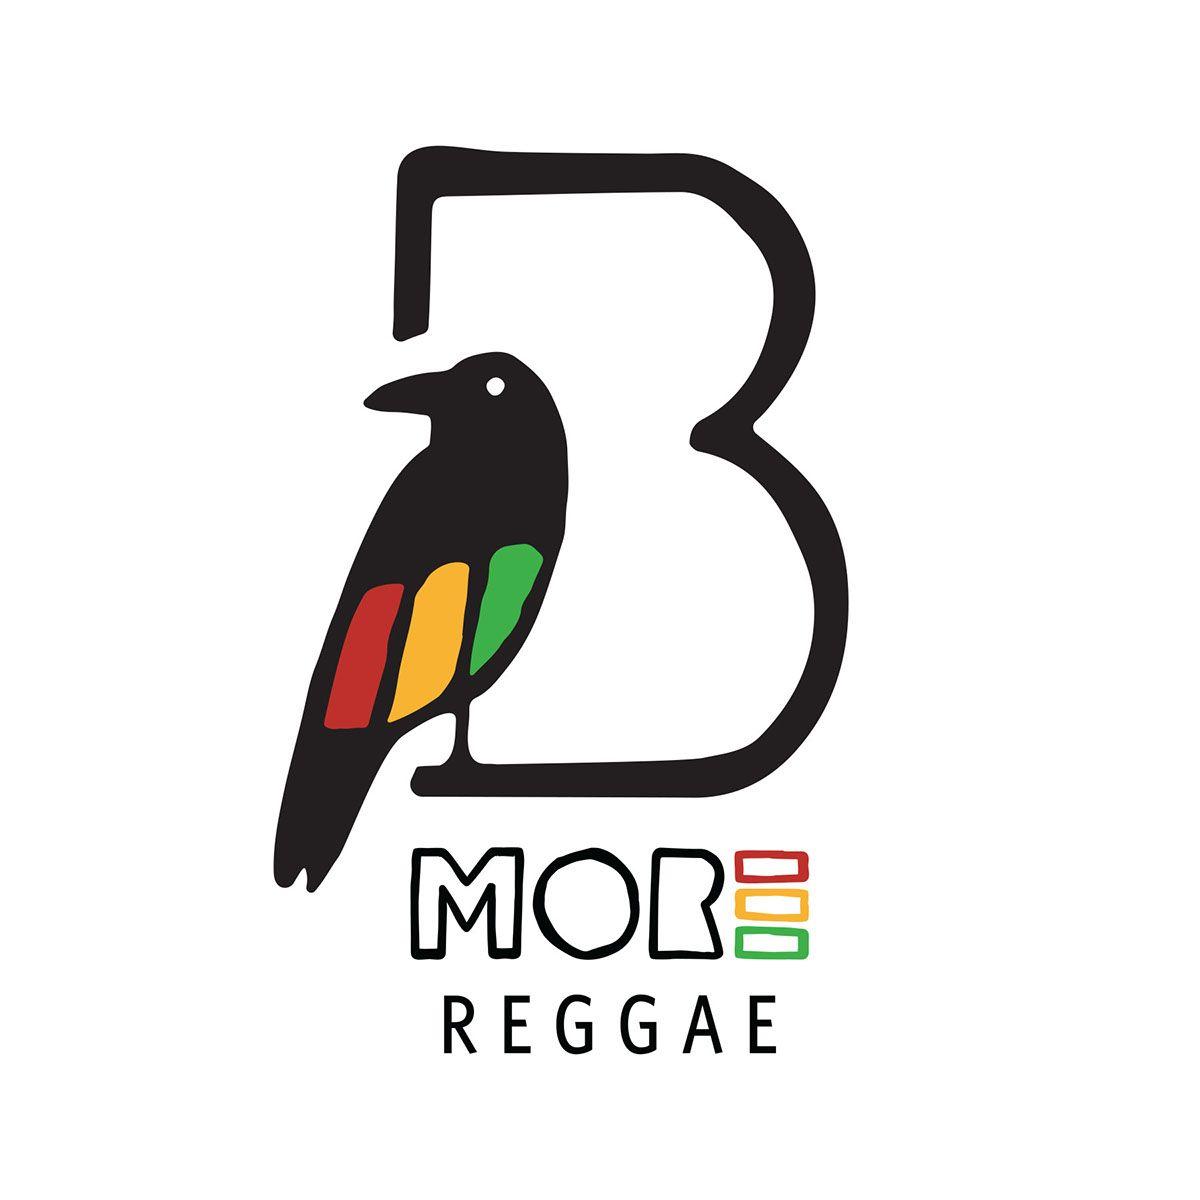 Reggae Logo - Bmore Reggae Logo System